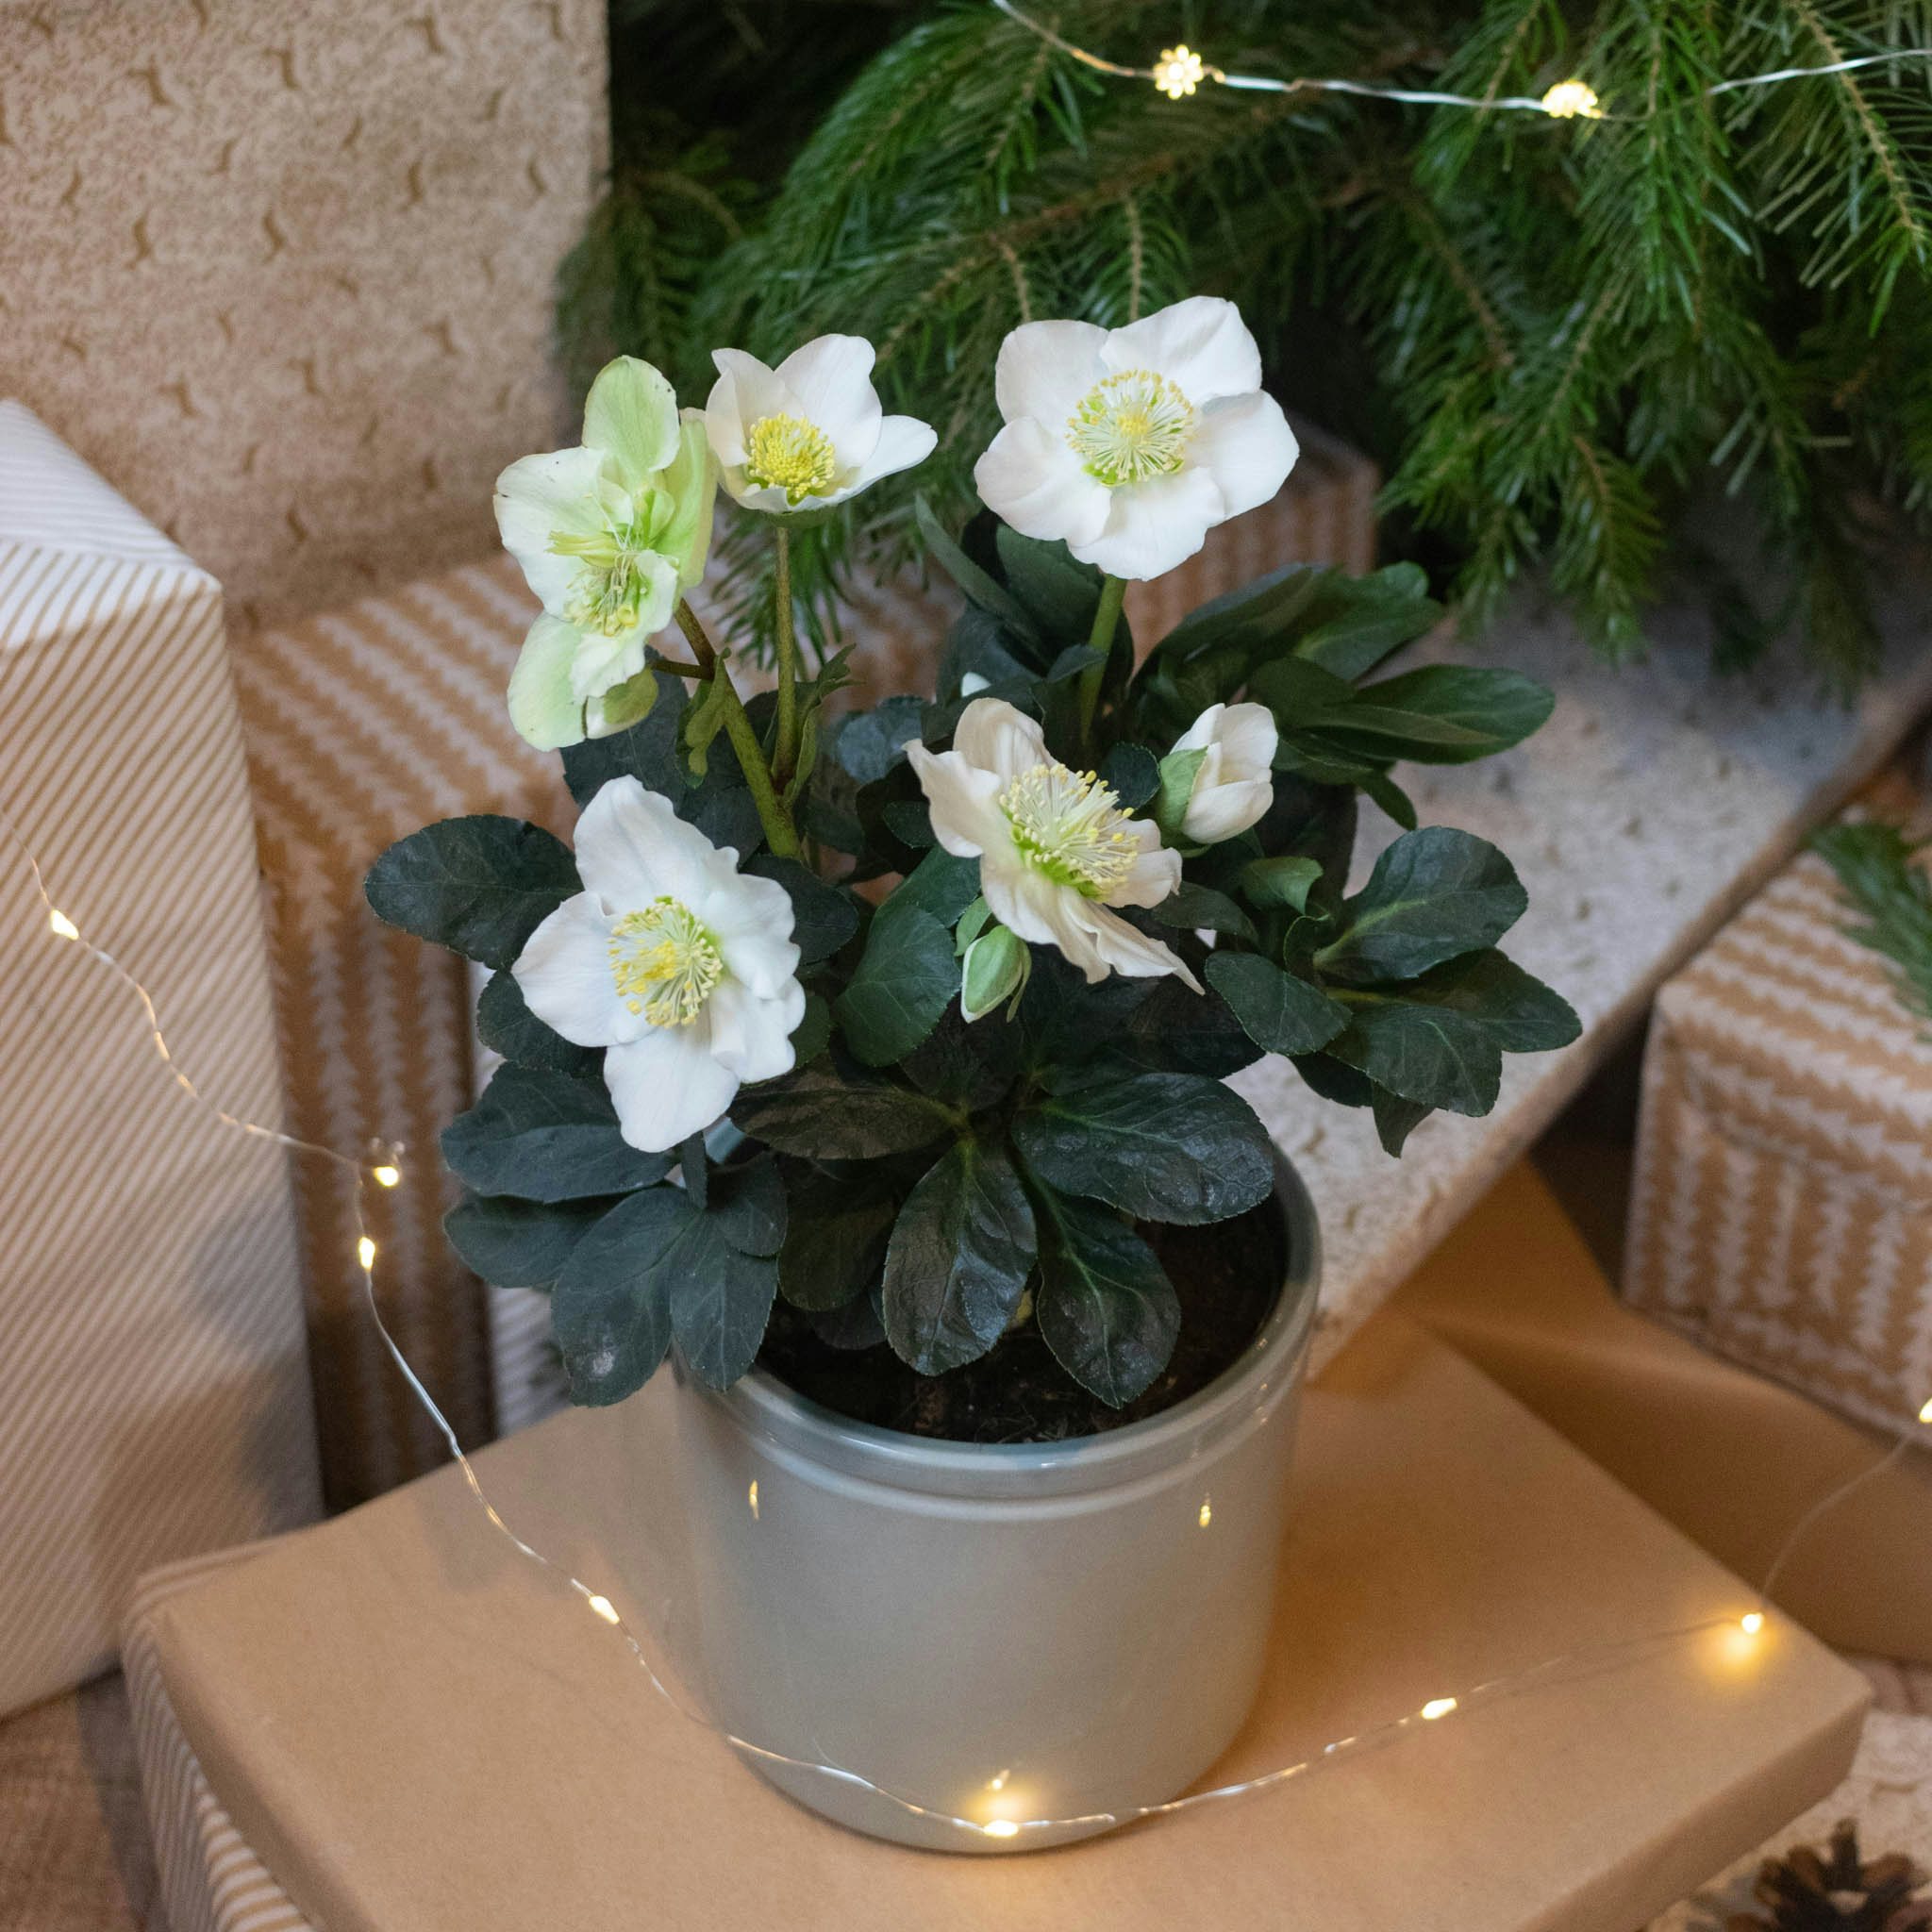 Cadeaux de Noël : quelle plante offrir ? Quels pot de fleurs